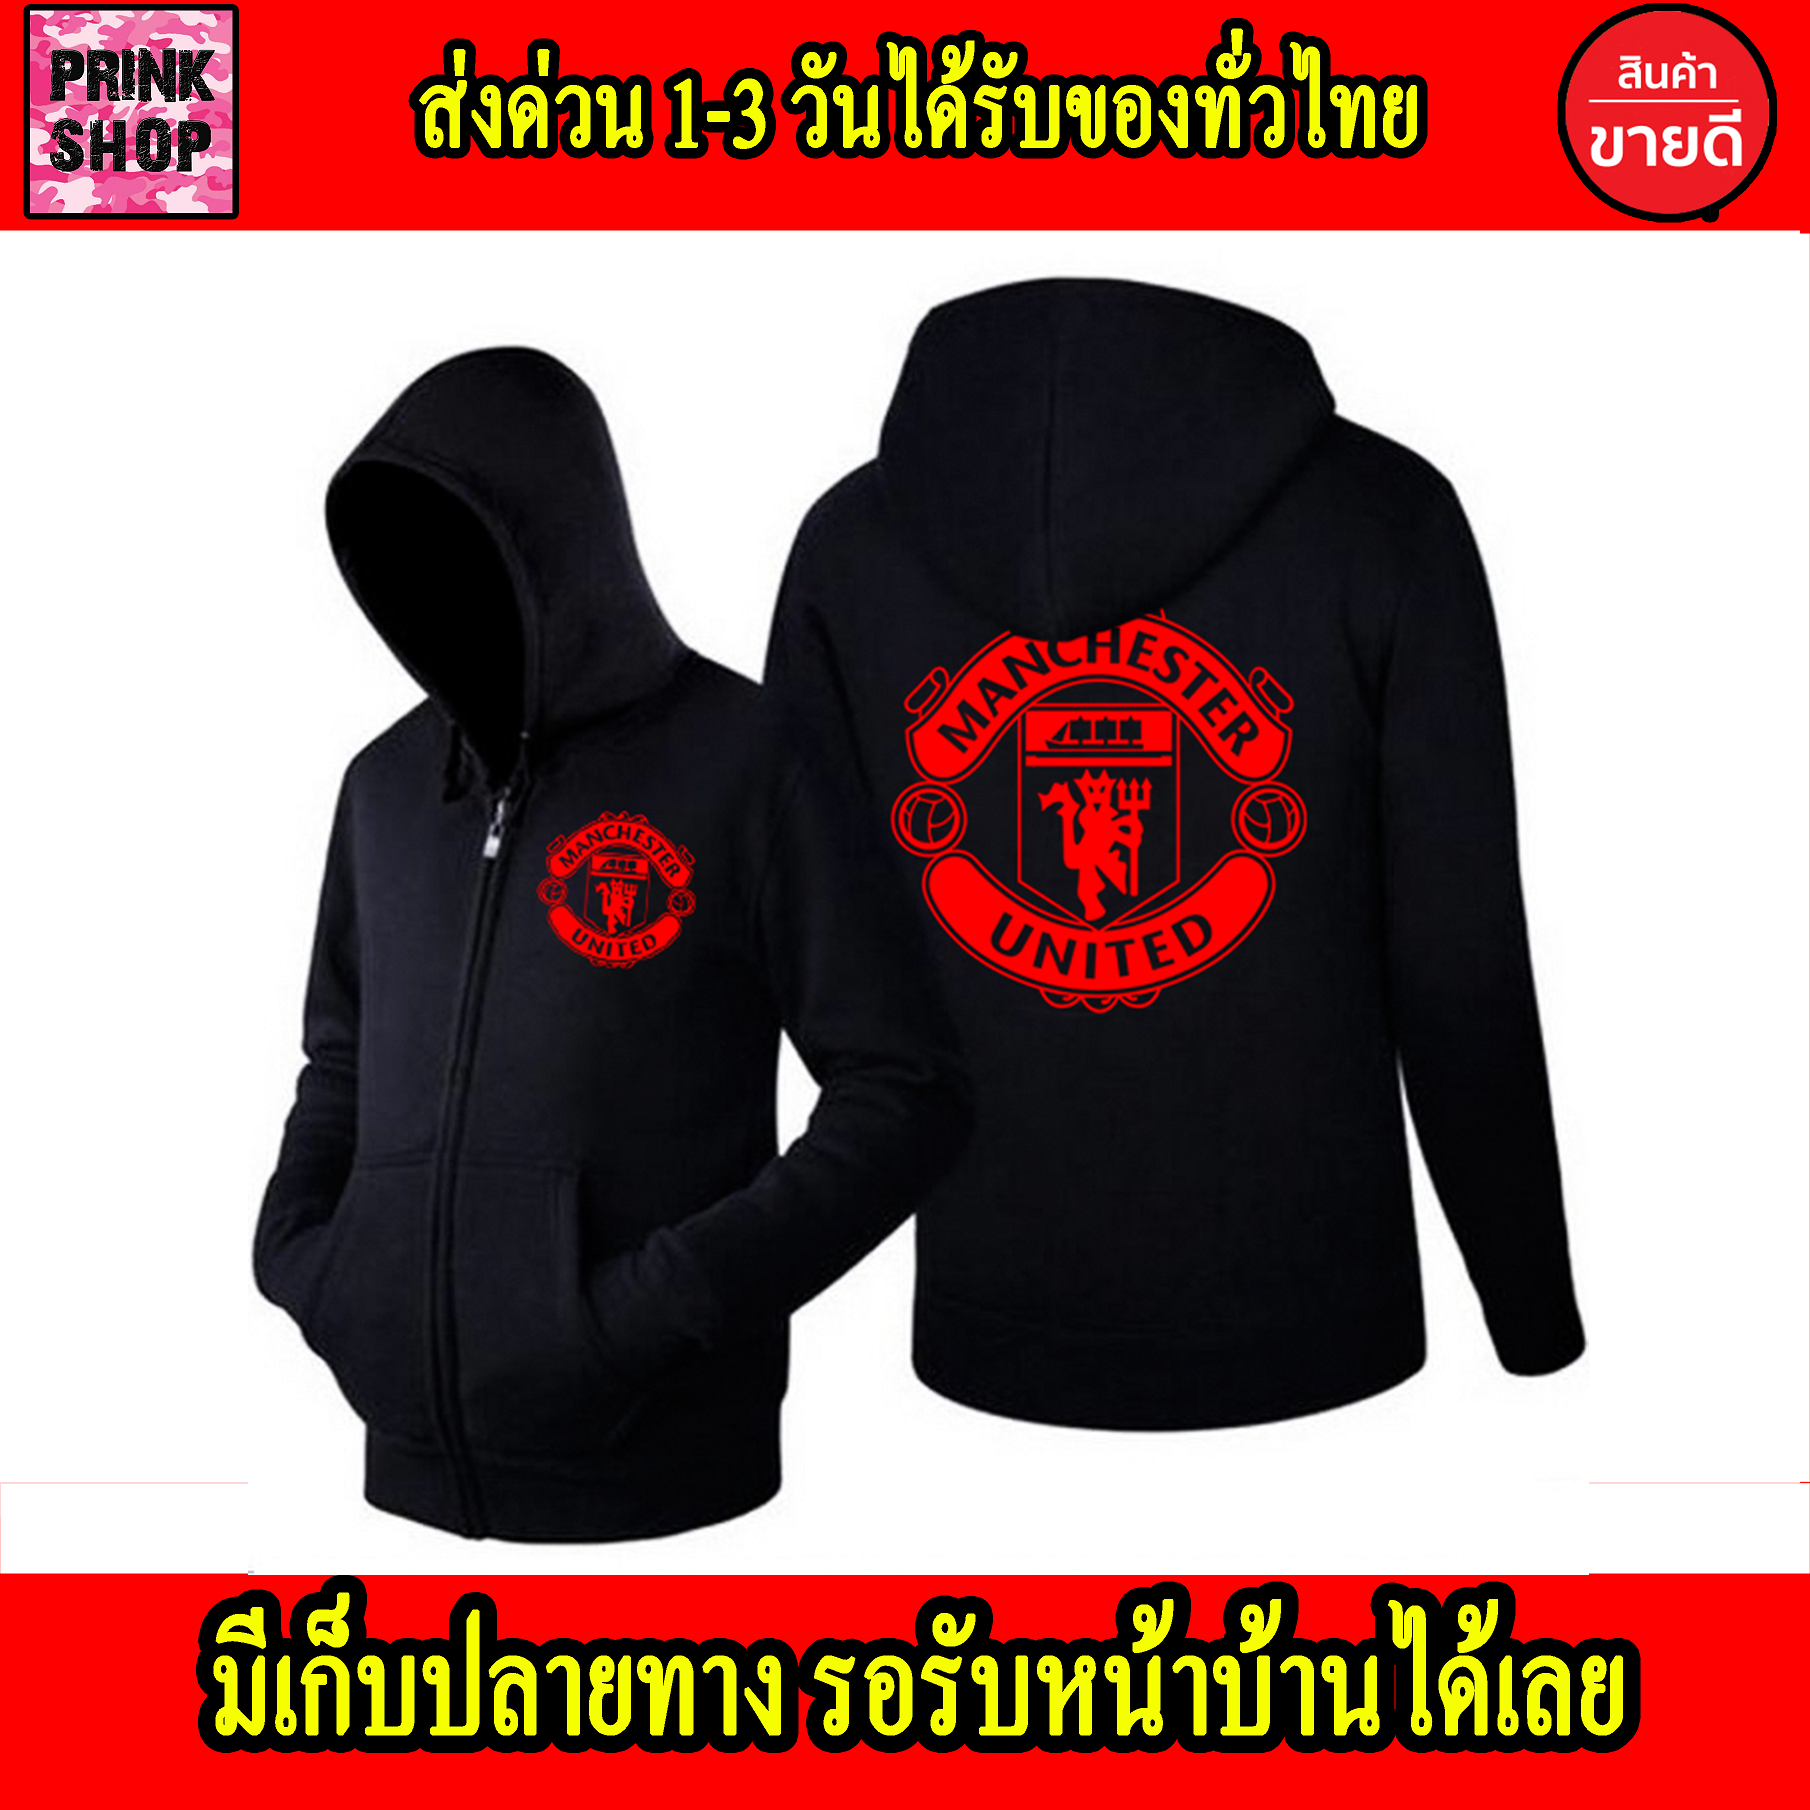 เสื้อฮู้ด Manchester United แมนเชสเตอร์ ยูไนเต็ด Man U ถูกที่สุด แบบซิป สวม สกรีนแบบเฟล็ก PU สวยสดไม่แตกไม่ลอก ส่งด่วนทั่วไทย